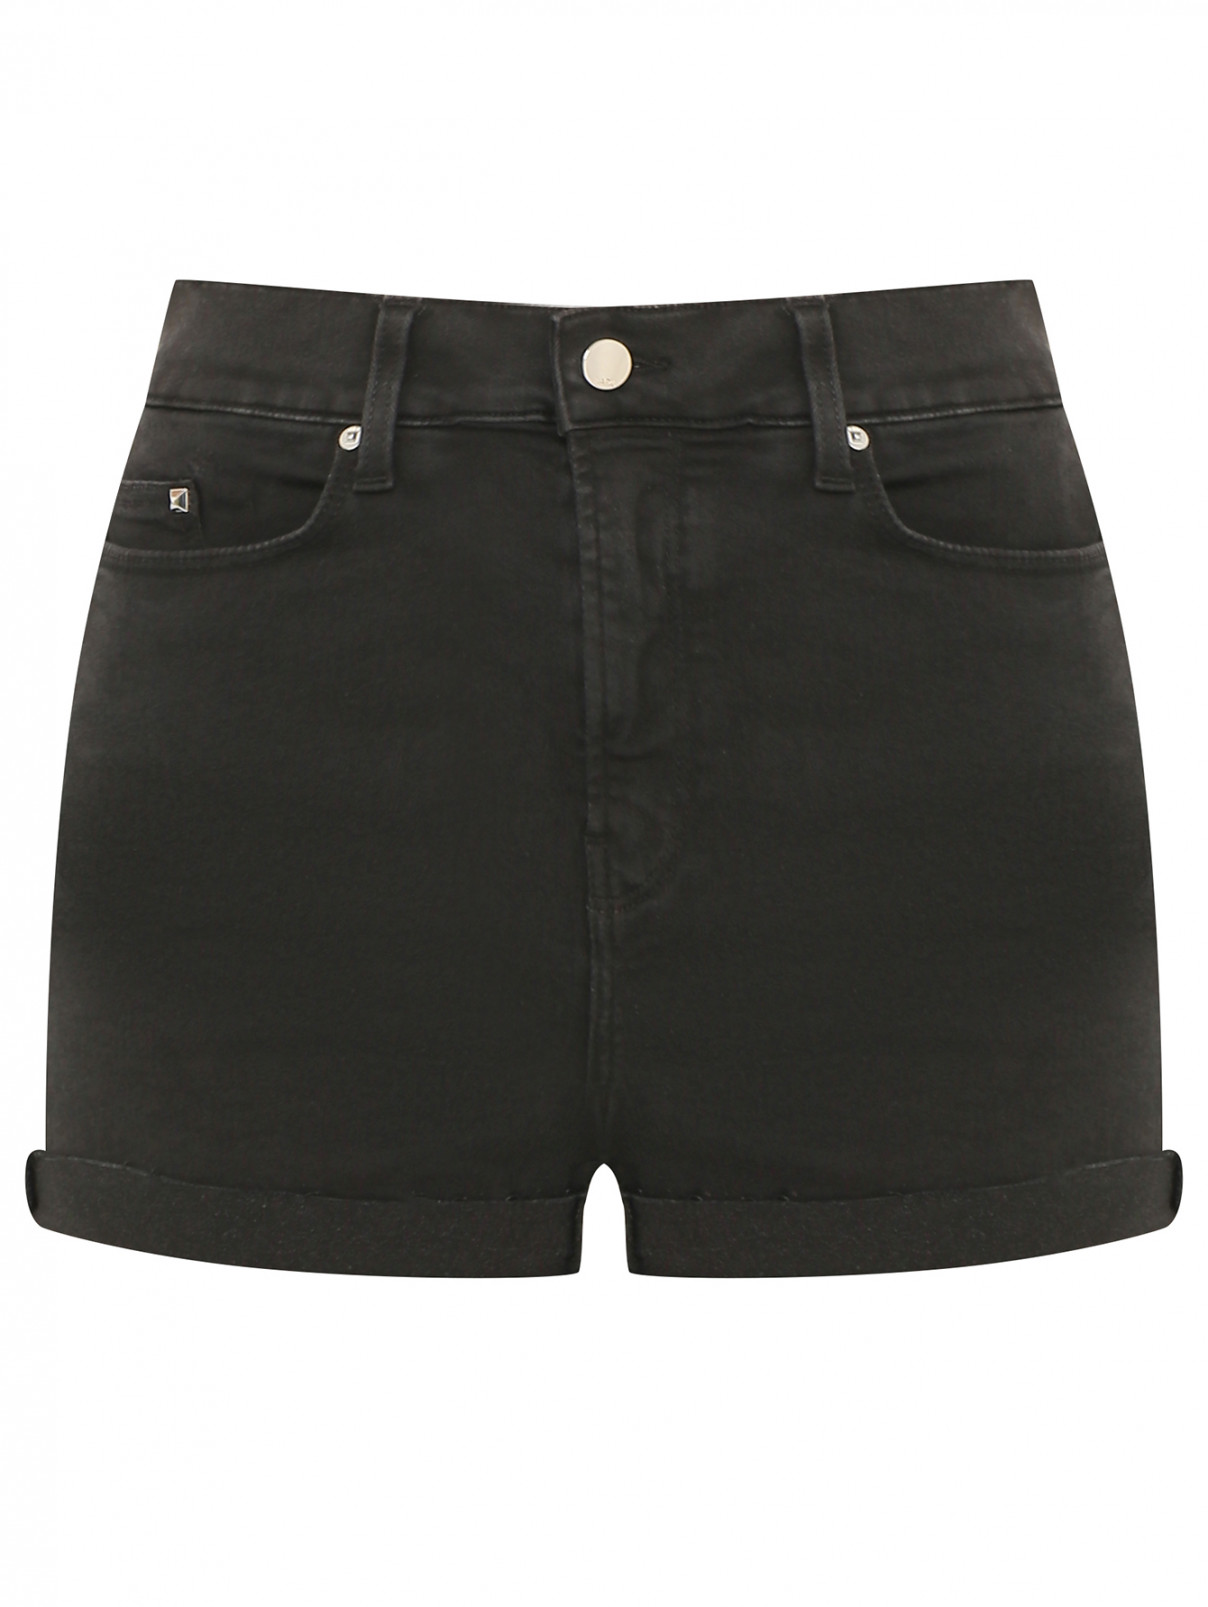 Джинсовые шорты с подворотами Karl Lagerfeld Denim  –  Общий вид  – Цвет:  Черный